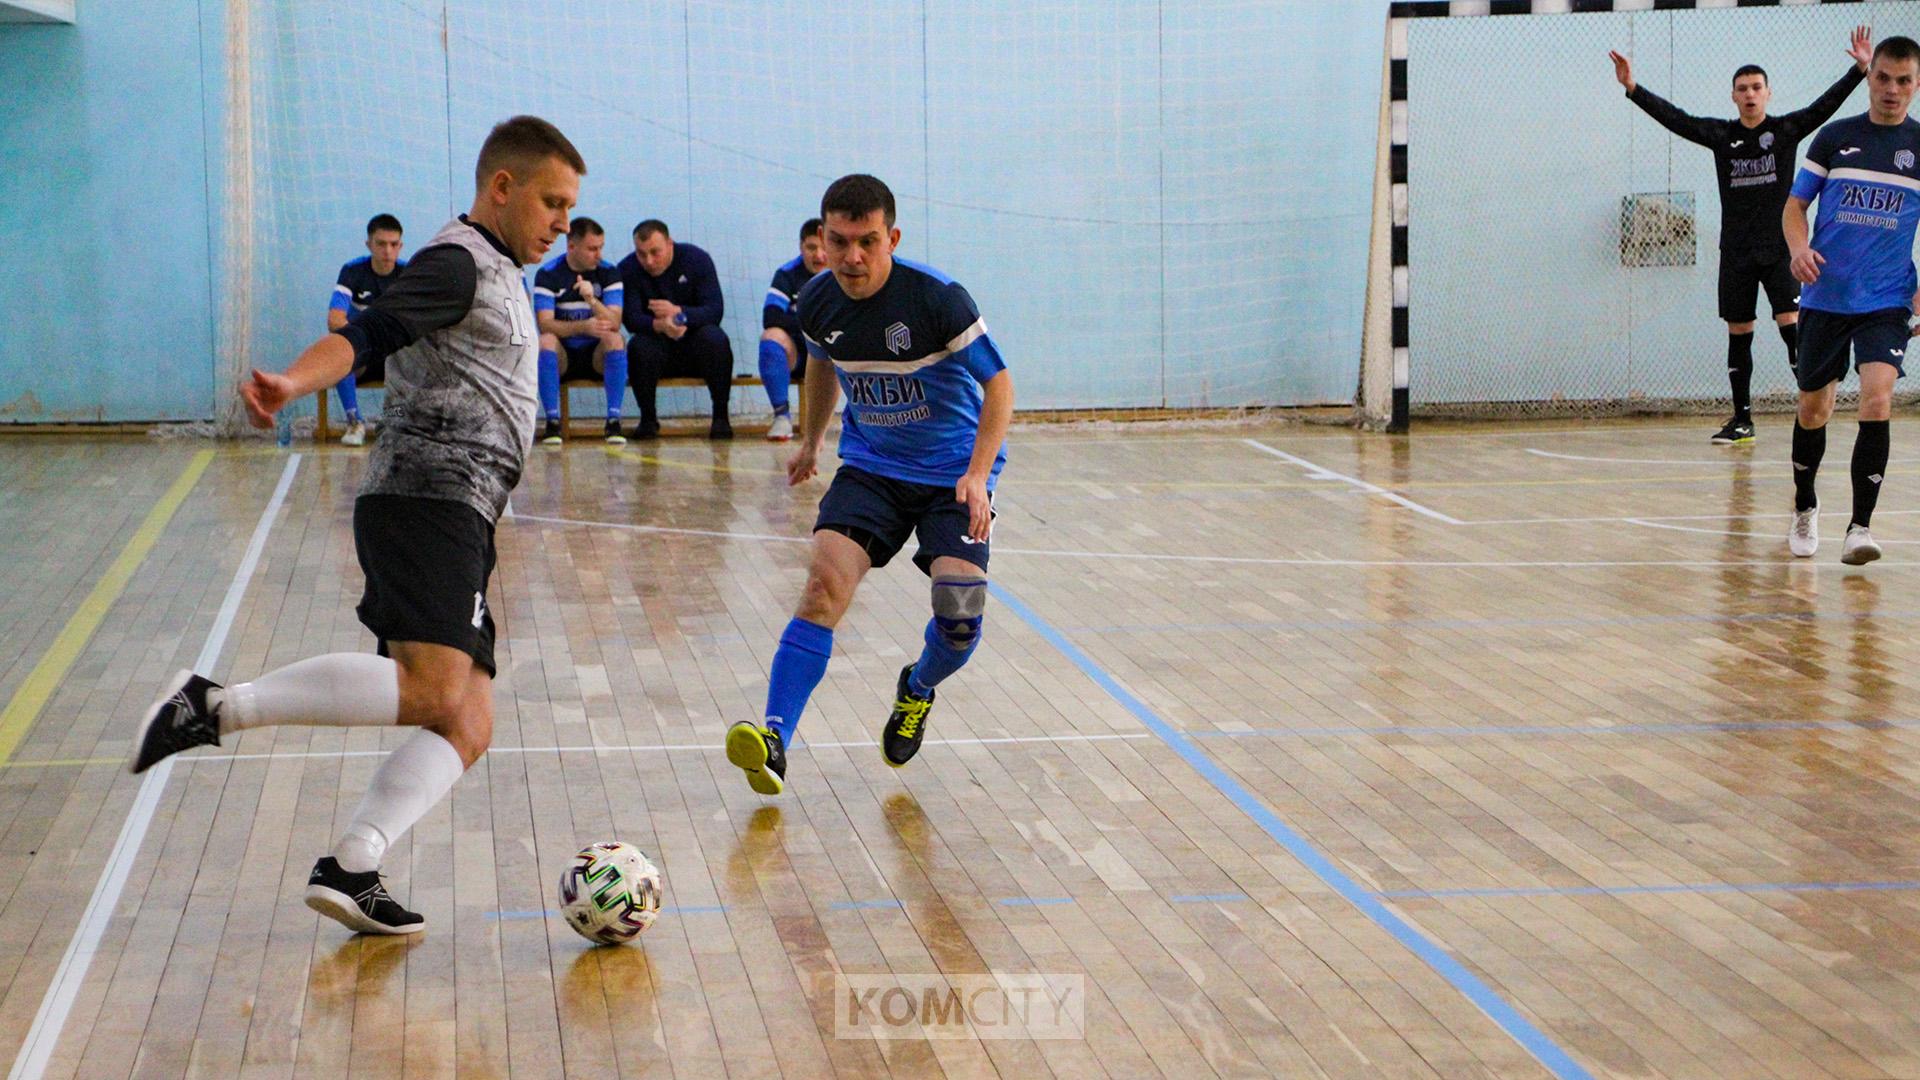 Команда из Комсомольска завоевала третье место в розыгрыше кубка по-мини футболу в Амурске